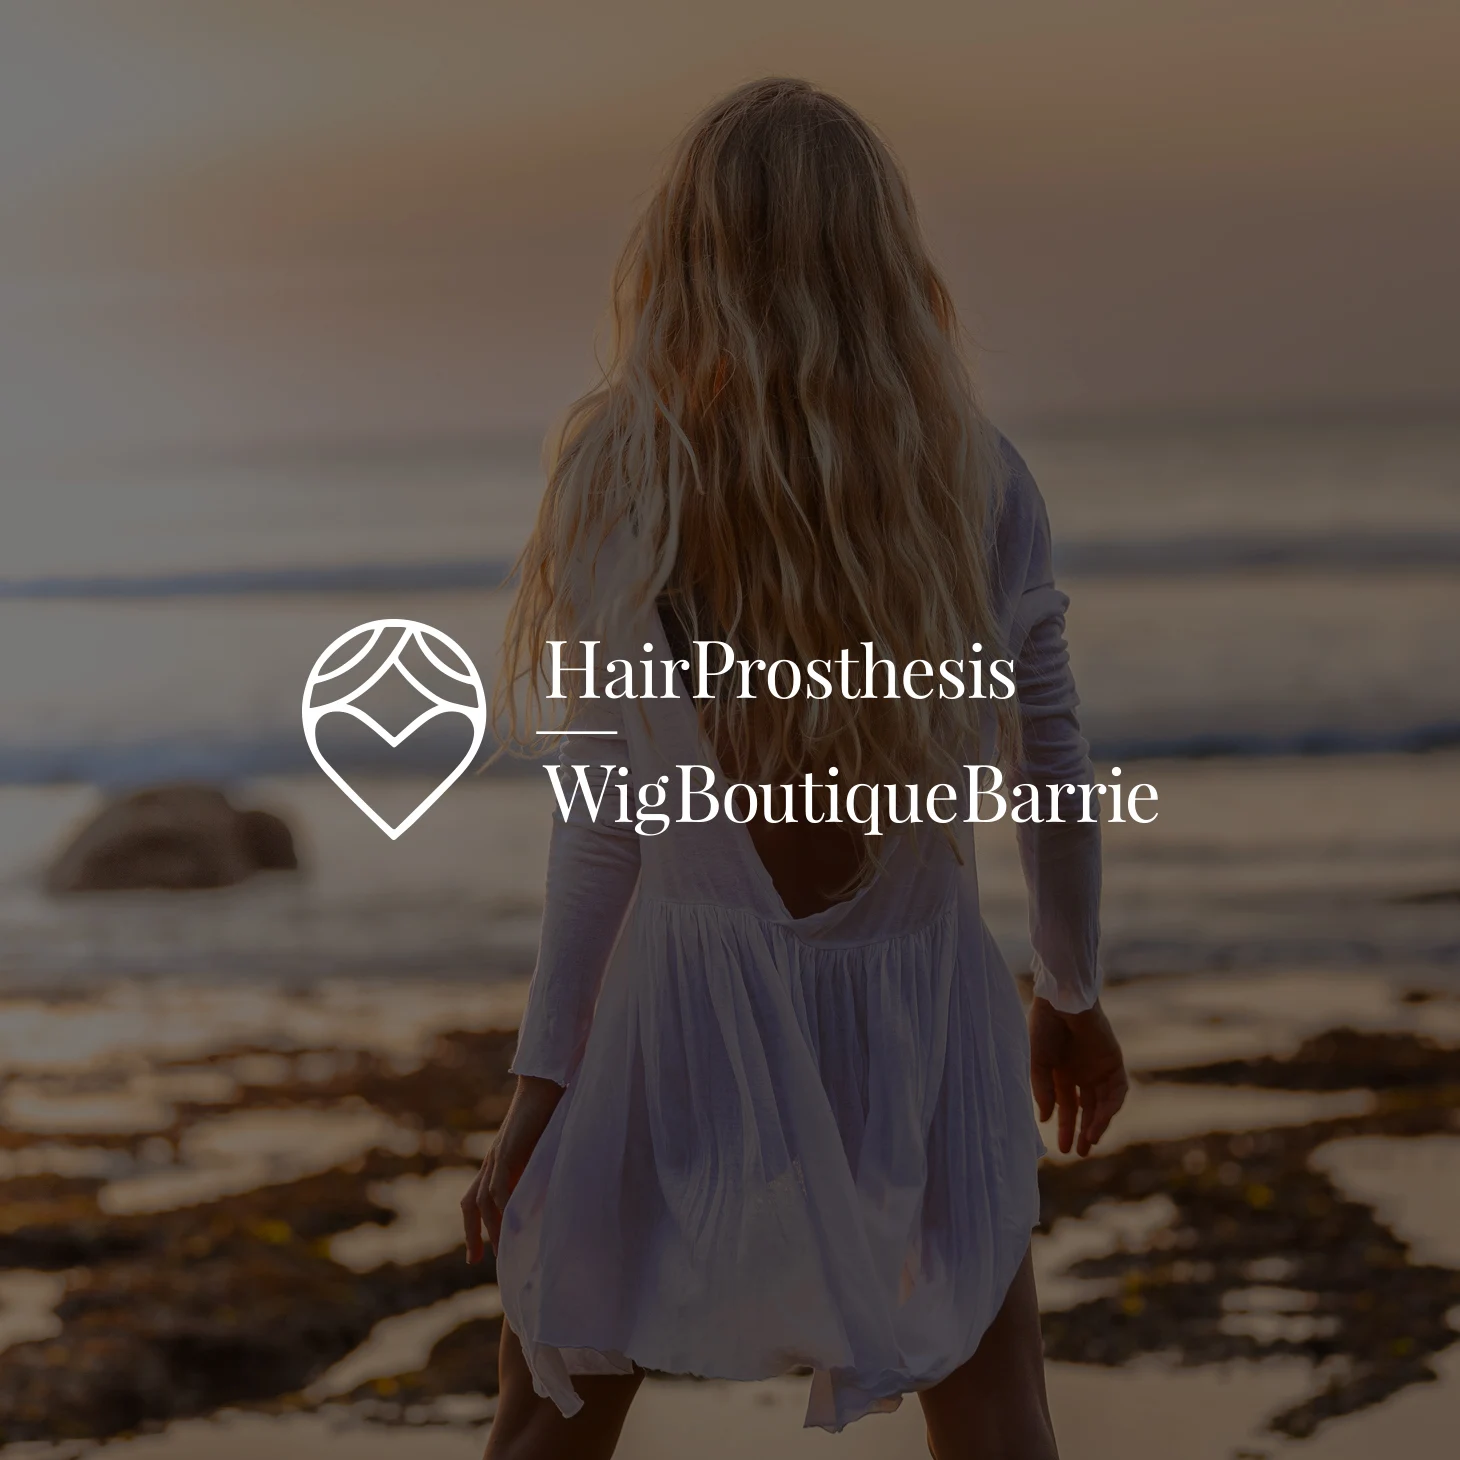 Hair Prosthesis